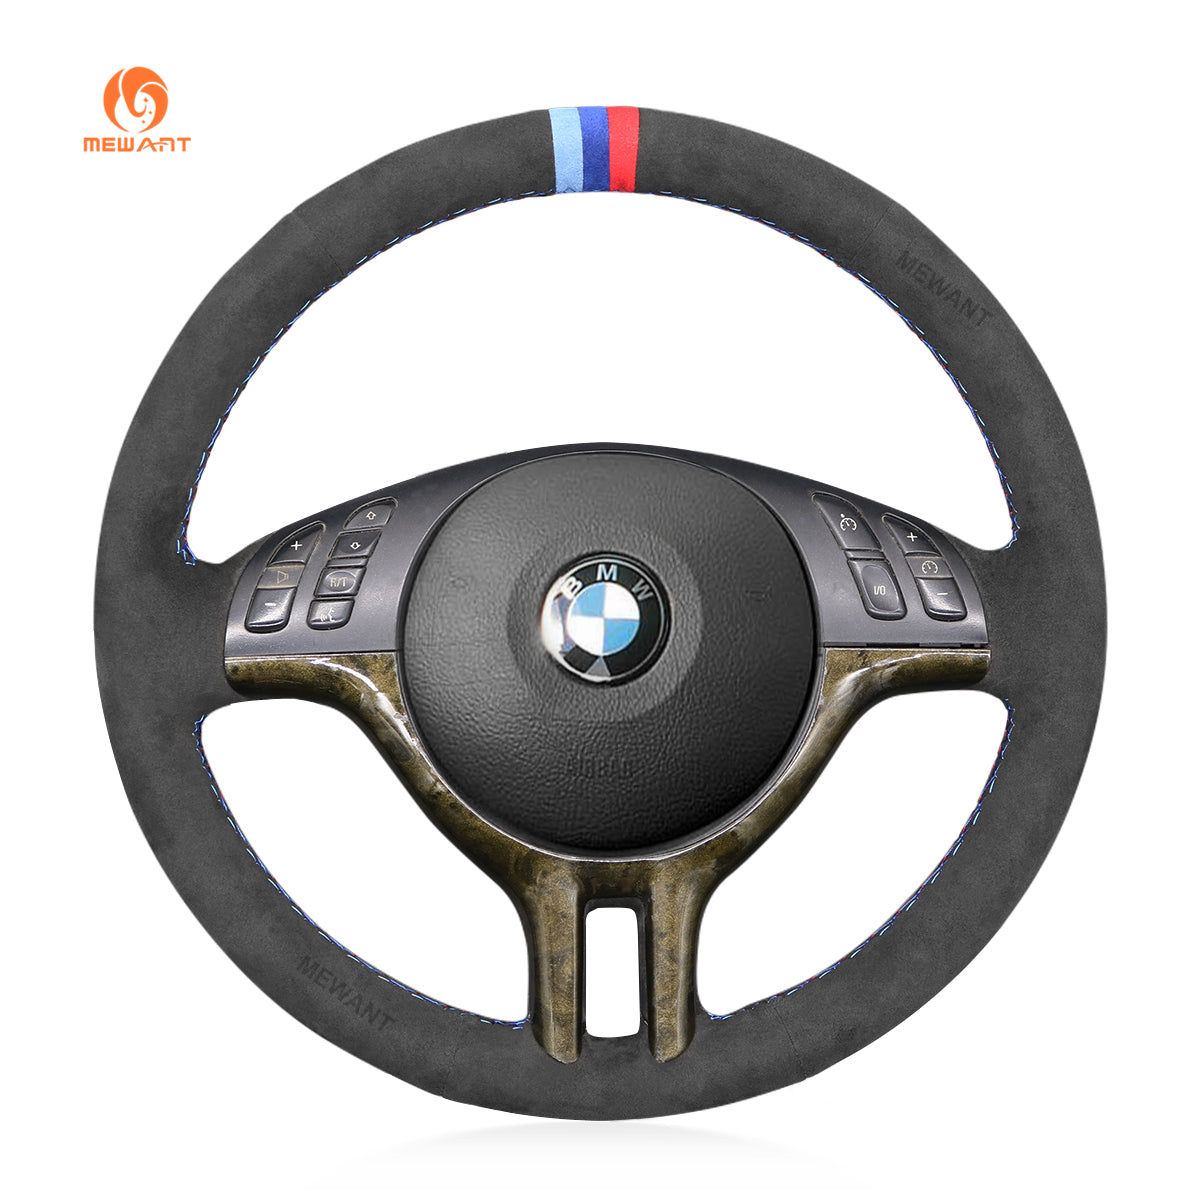 MEWANT Dark Grey Alcantara Car Steering Wheel Cover for BMW E46 318i 325i 330ci / E39 / X5 E53 / Z3 E36/7 E36/8